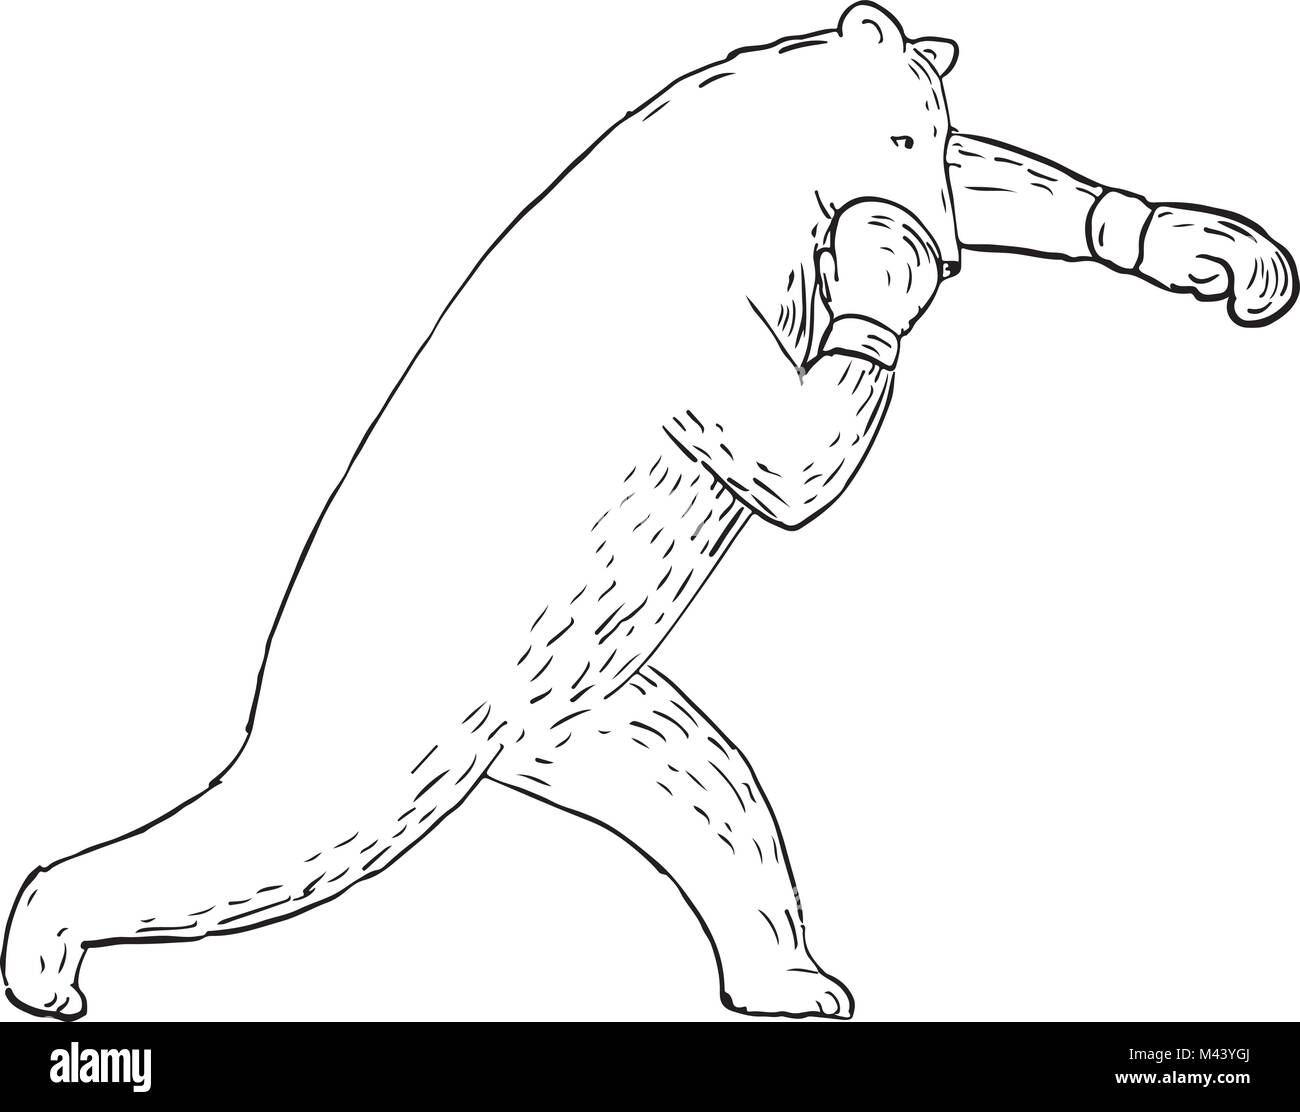 Schizzo di disegno illustrazione dello stile di Kodiak Bear, grizzly o orso bruno gettando una sinistra punzone diritta o croce visto dal lato. Illustrazione Vettoriale